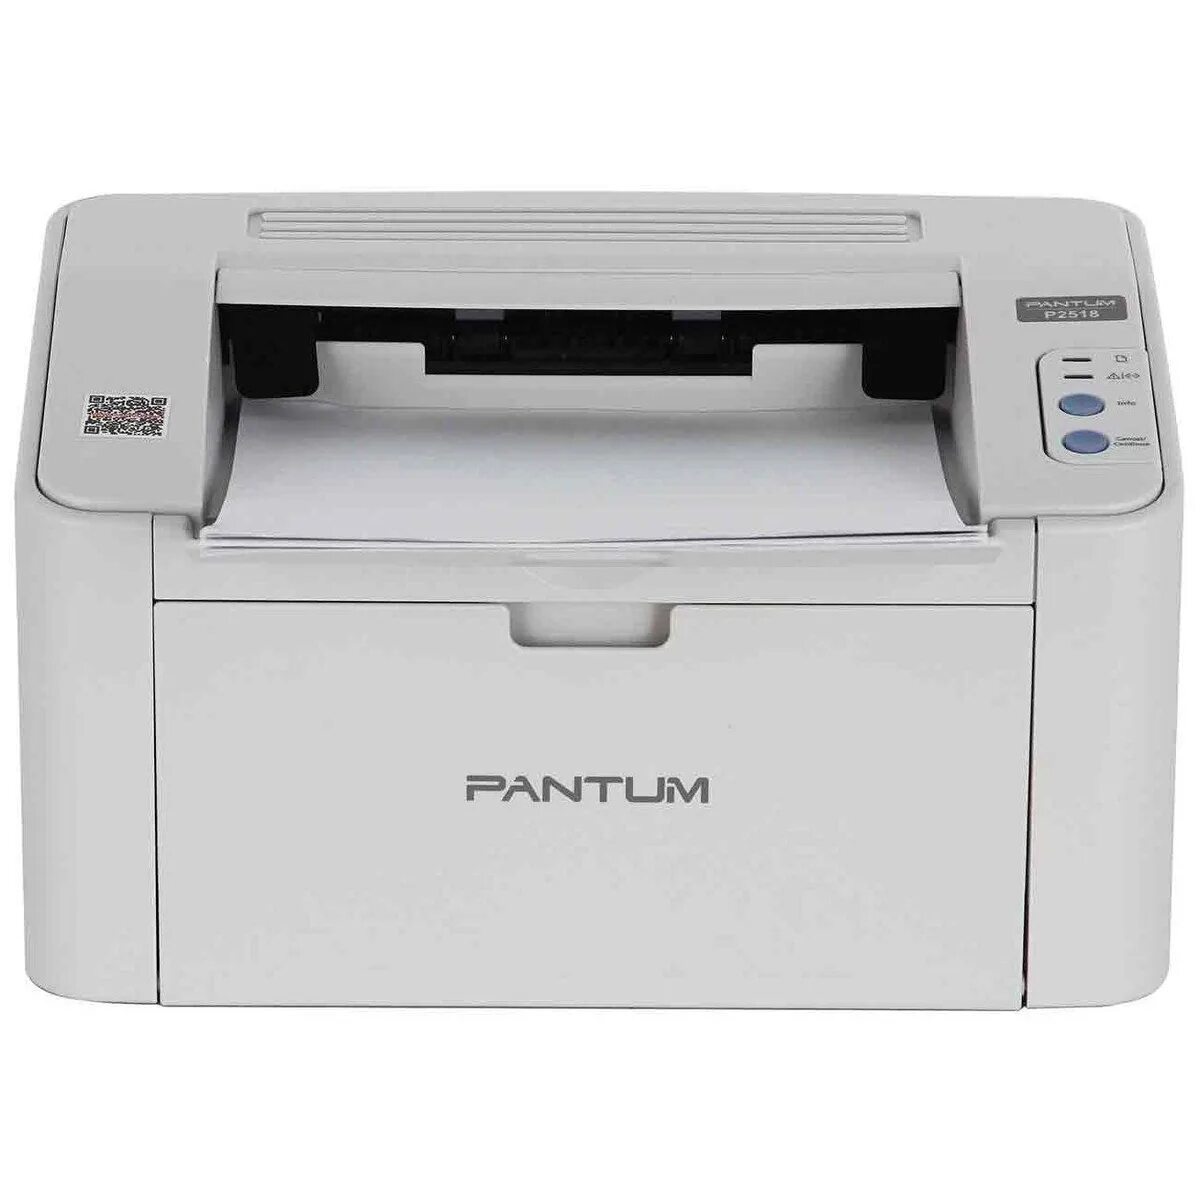 Принтер лазерный Pantum p2200. Принтер лазерный Pantum p2500nw. Принтер лазерный Pantum p2518. Принтер лазерный Pantum p2200 a4.